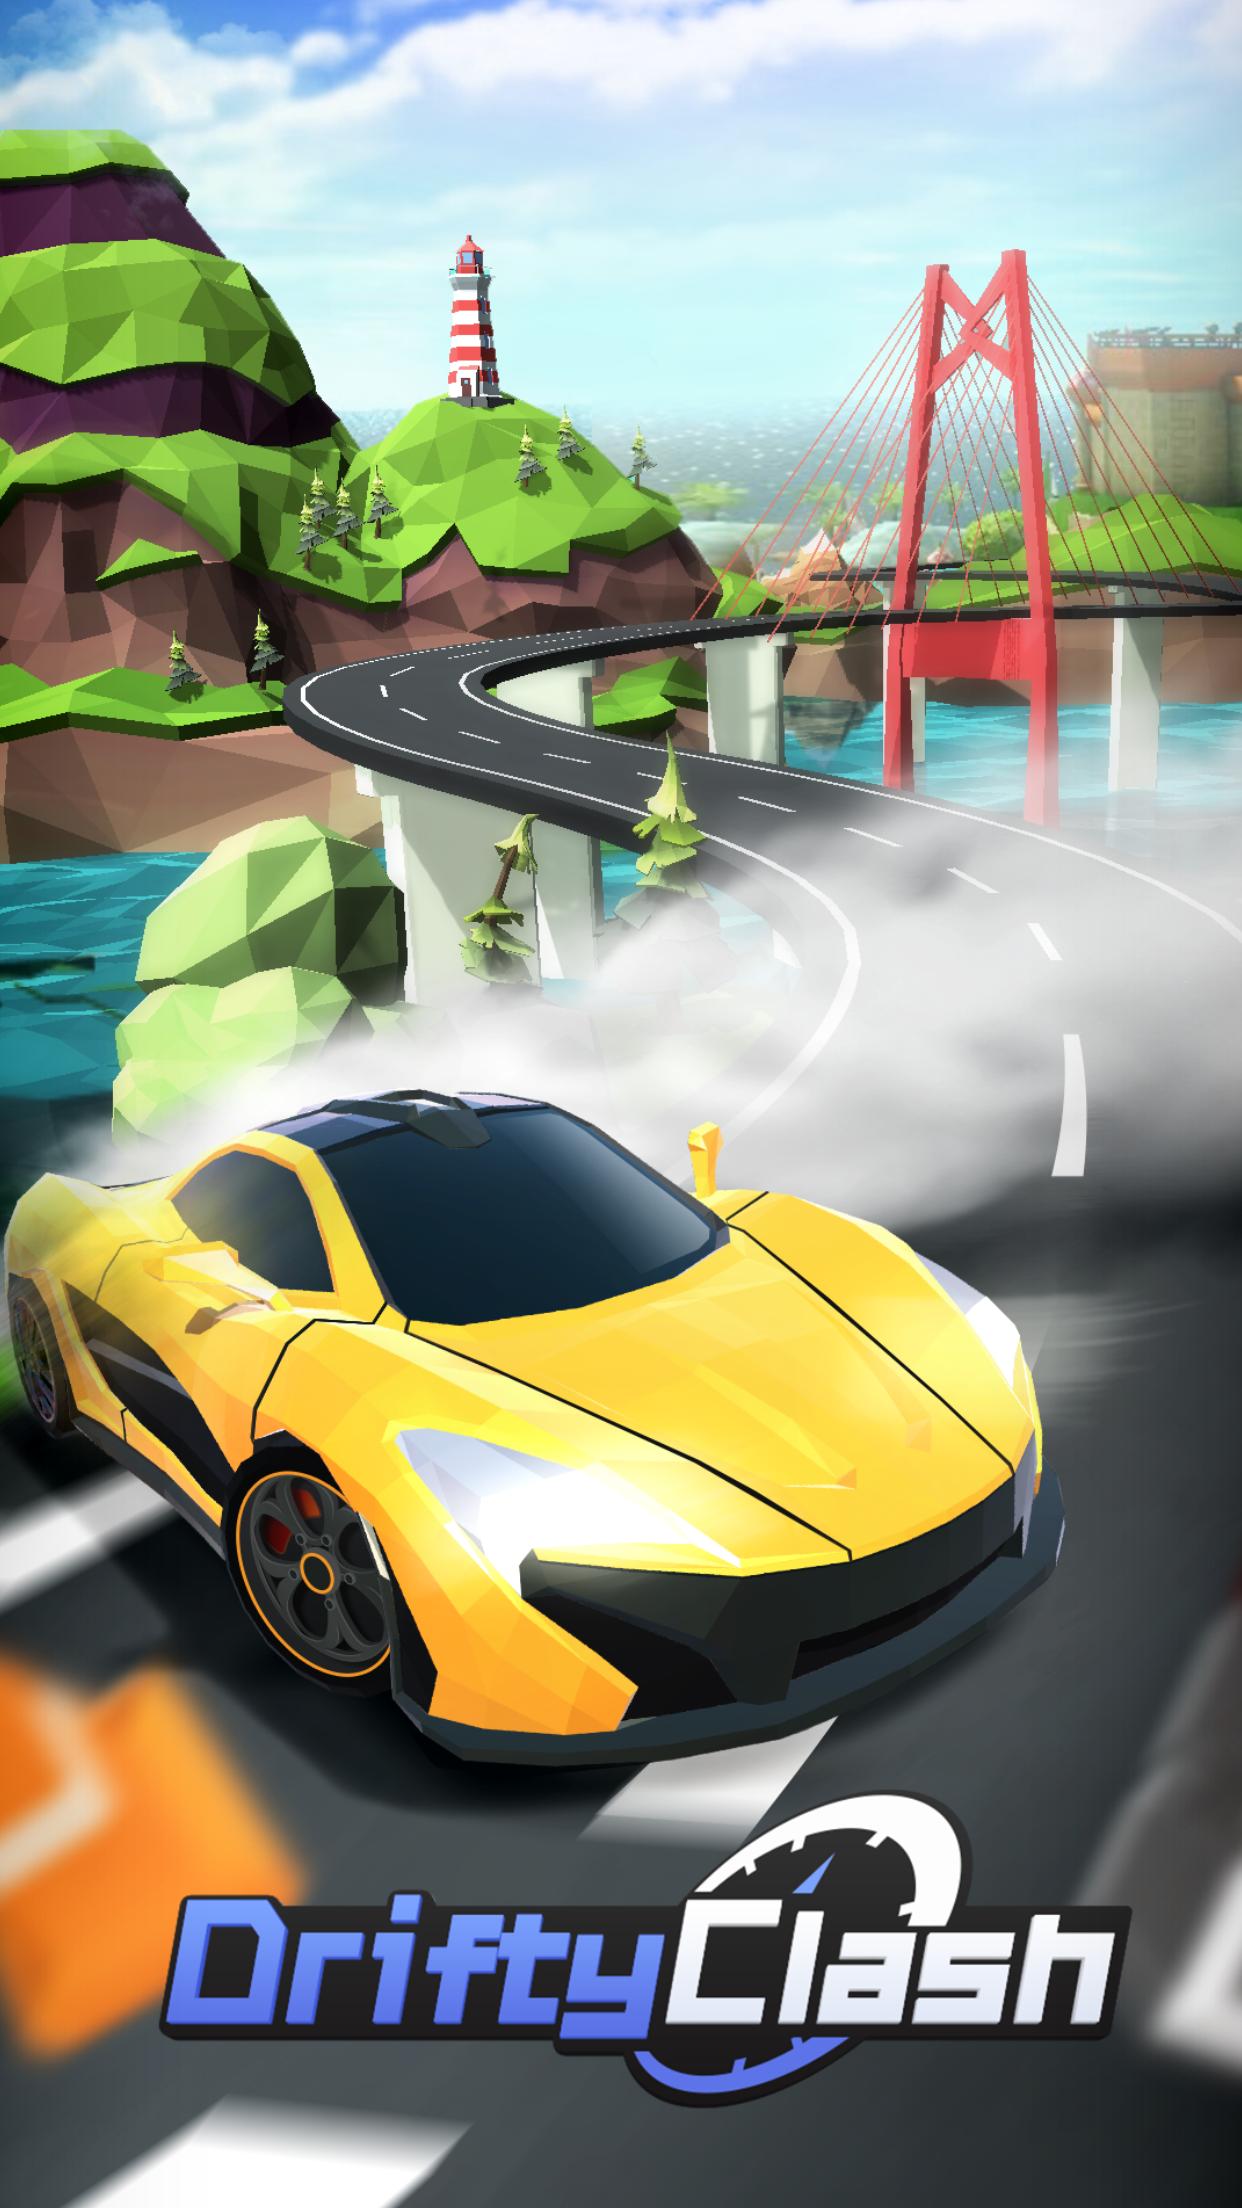 Drifty. Мод Drive Clash 1.86. Screenshots car Clash Mod. Drift clash мод много